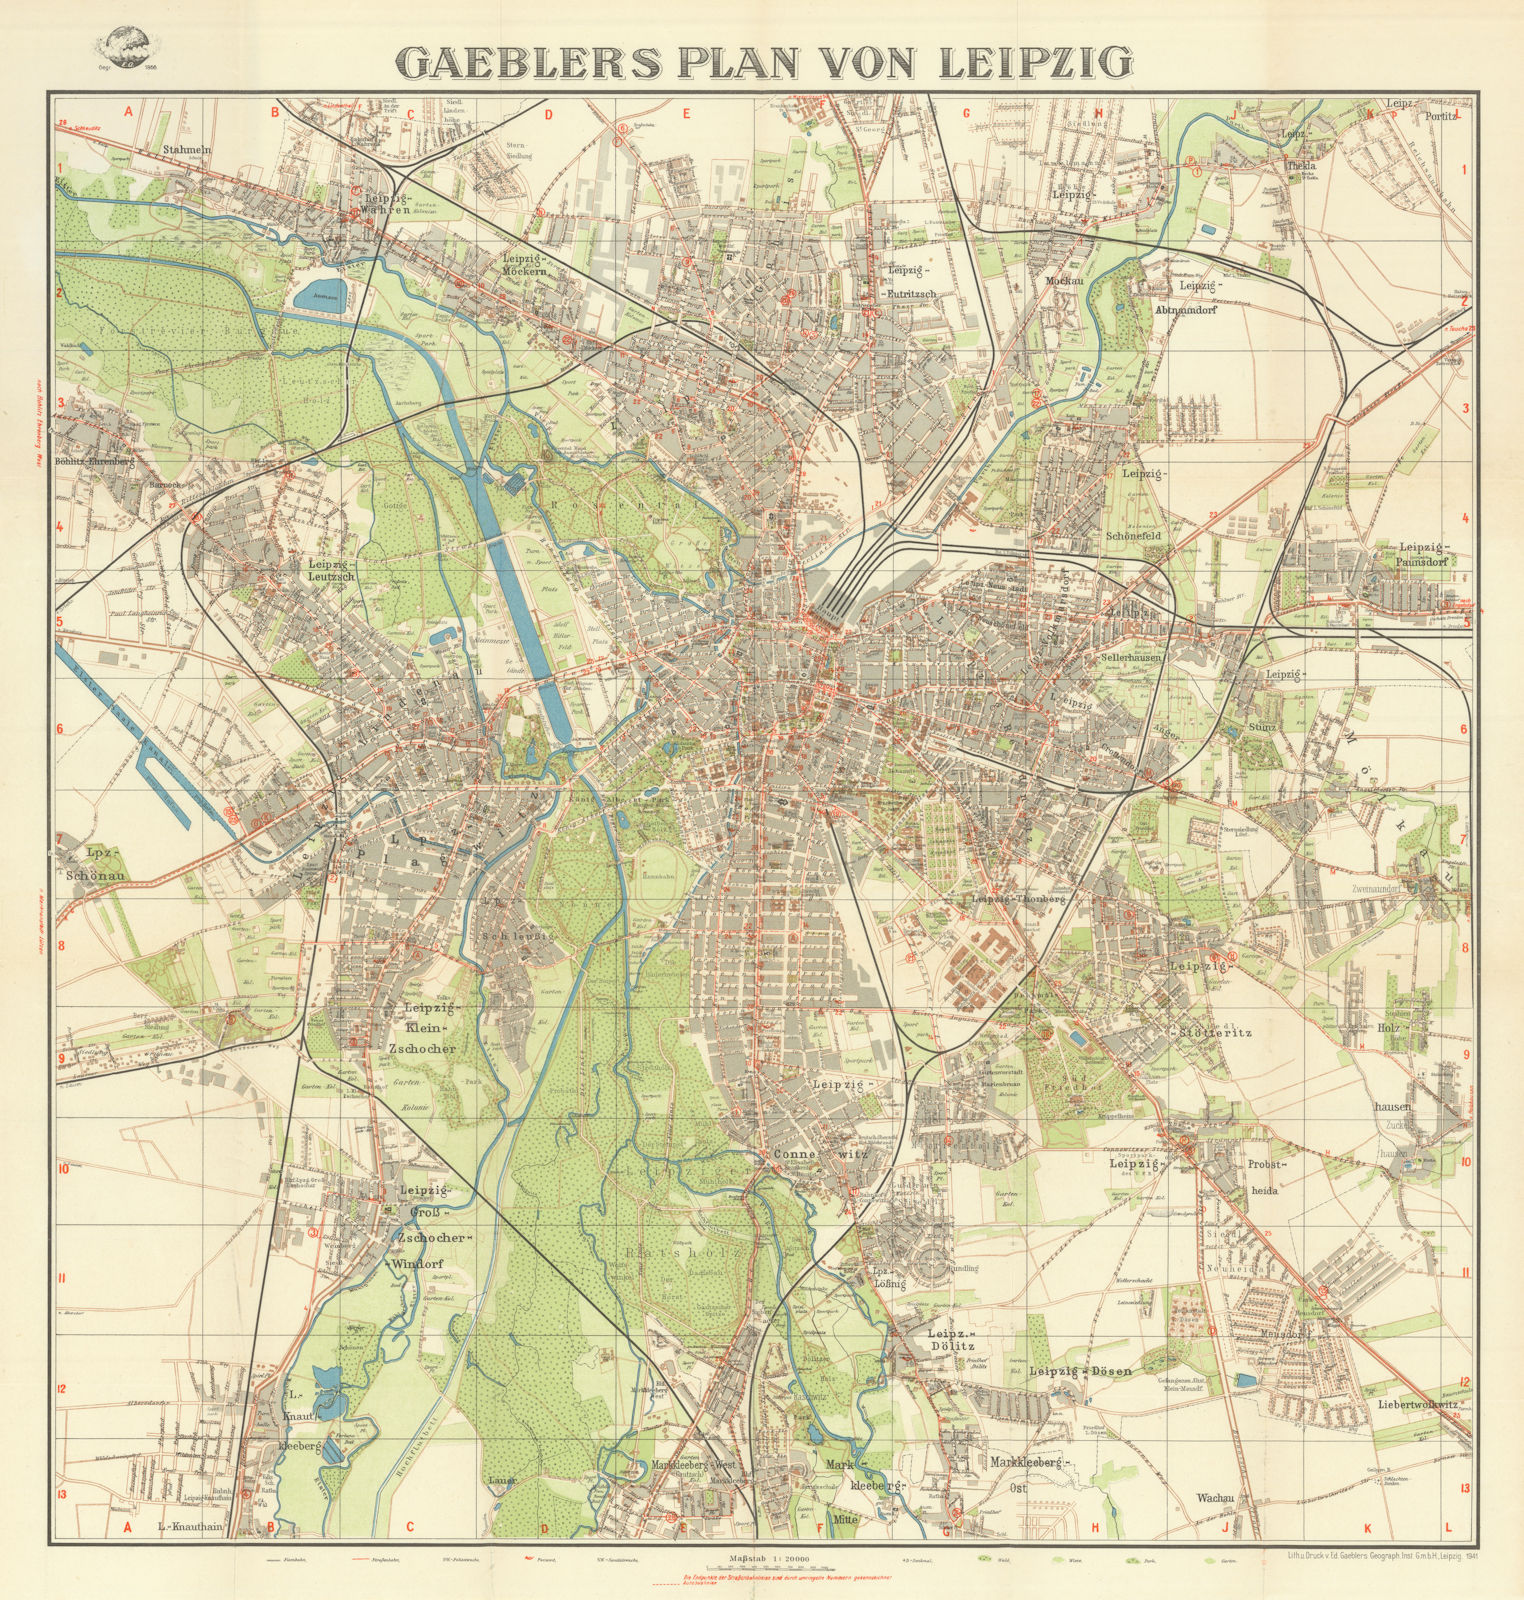 Gaebler's Plan von Leipzig. City plan 1941 old vintage map chart